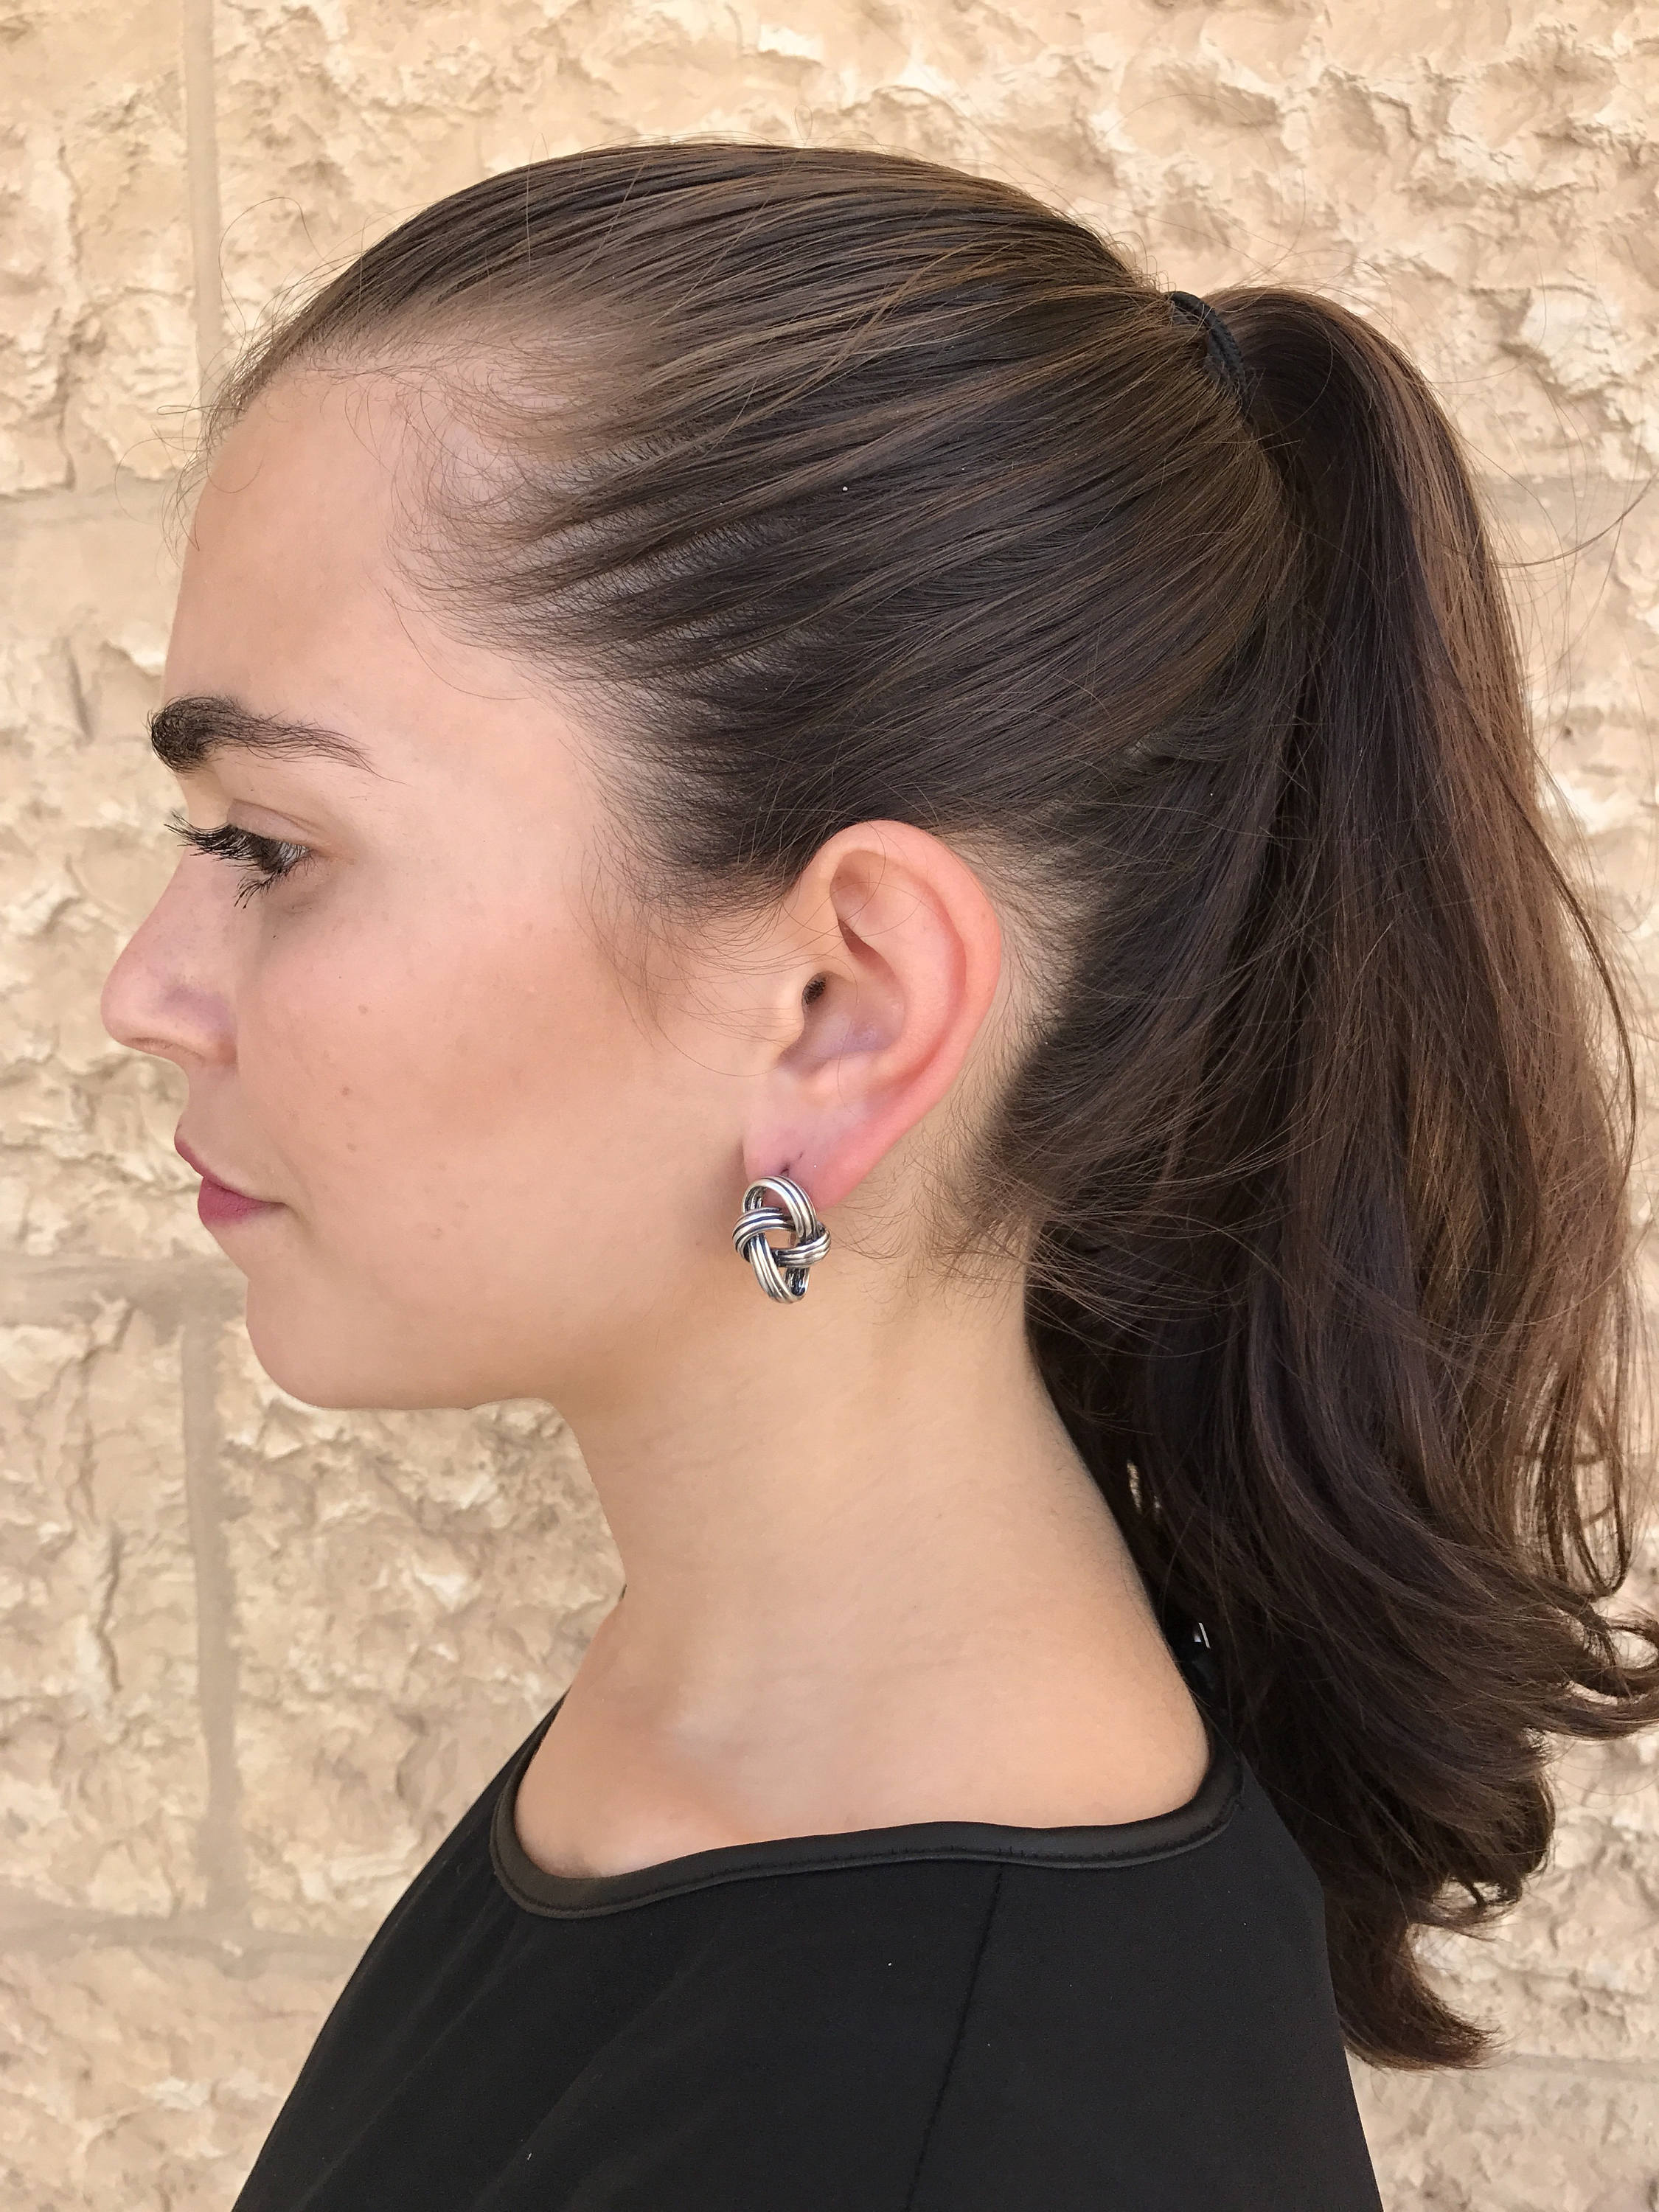 Silver Knot Earrings, Knot Earrings, Silver Earrings, Unique Art Earrings, Statement Earrings, Artistic Earrings, Sterling Silver